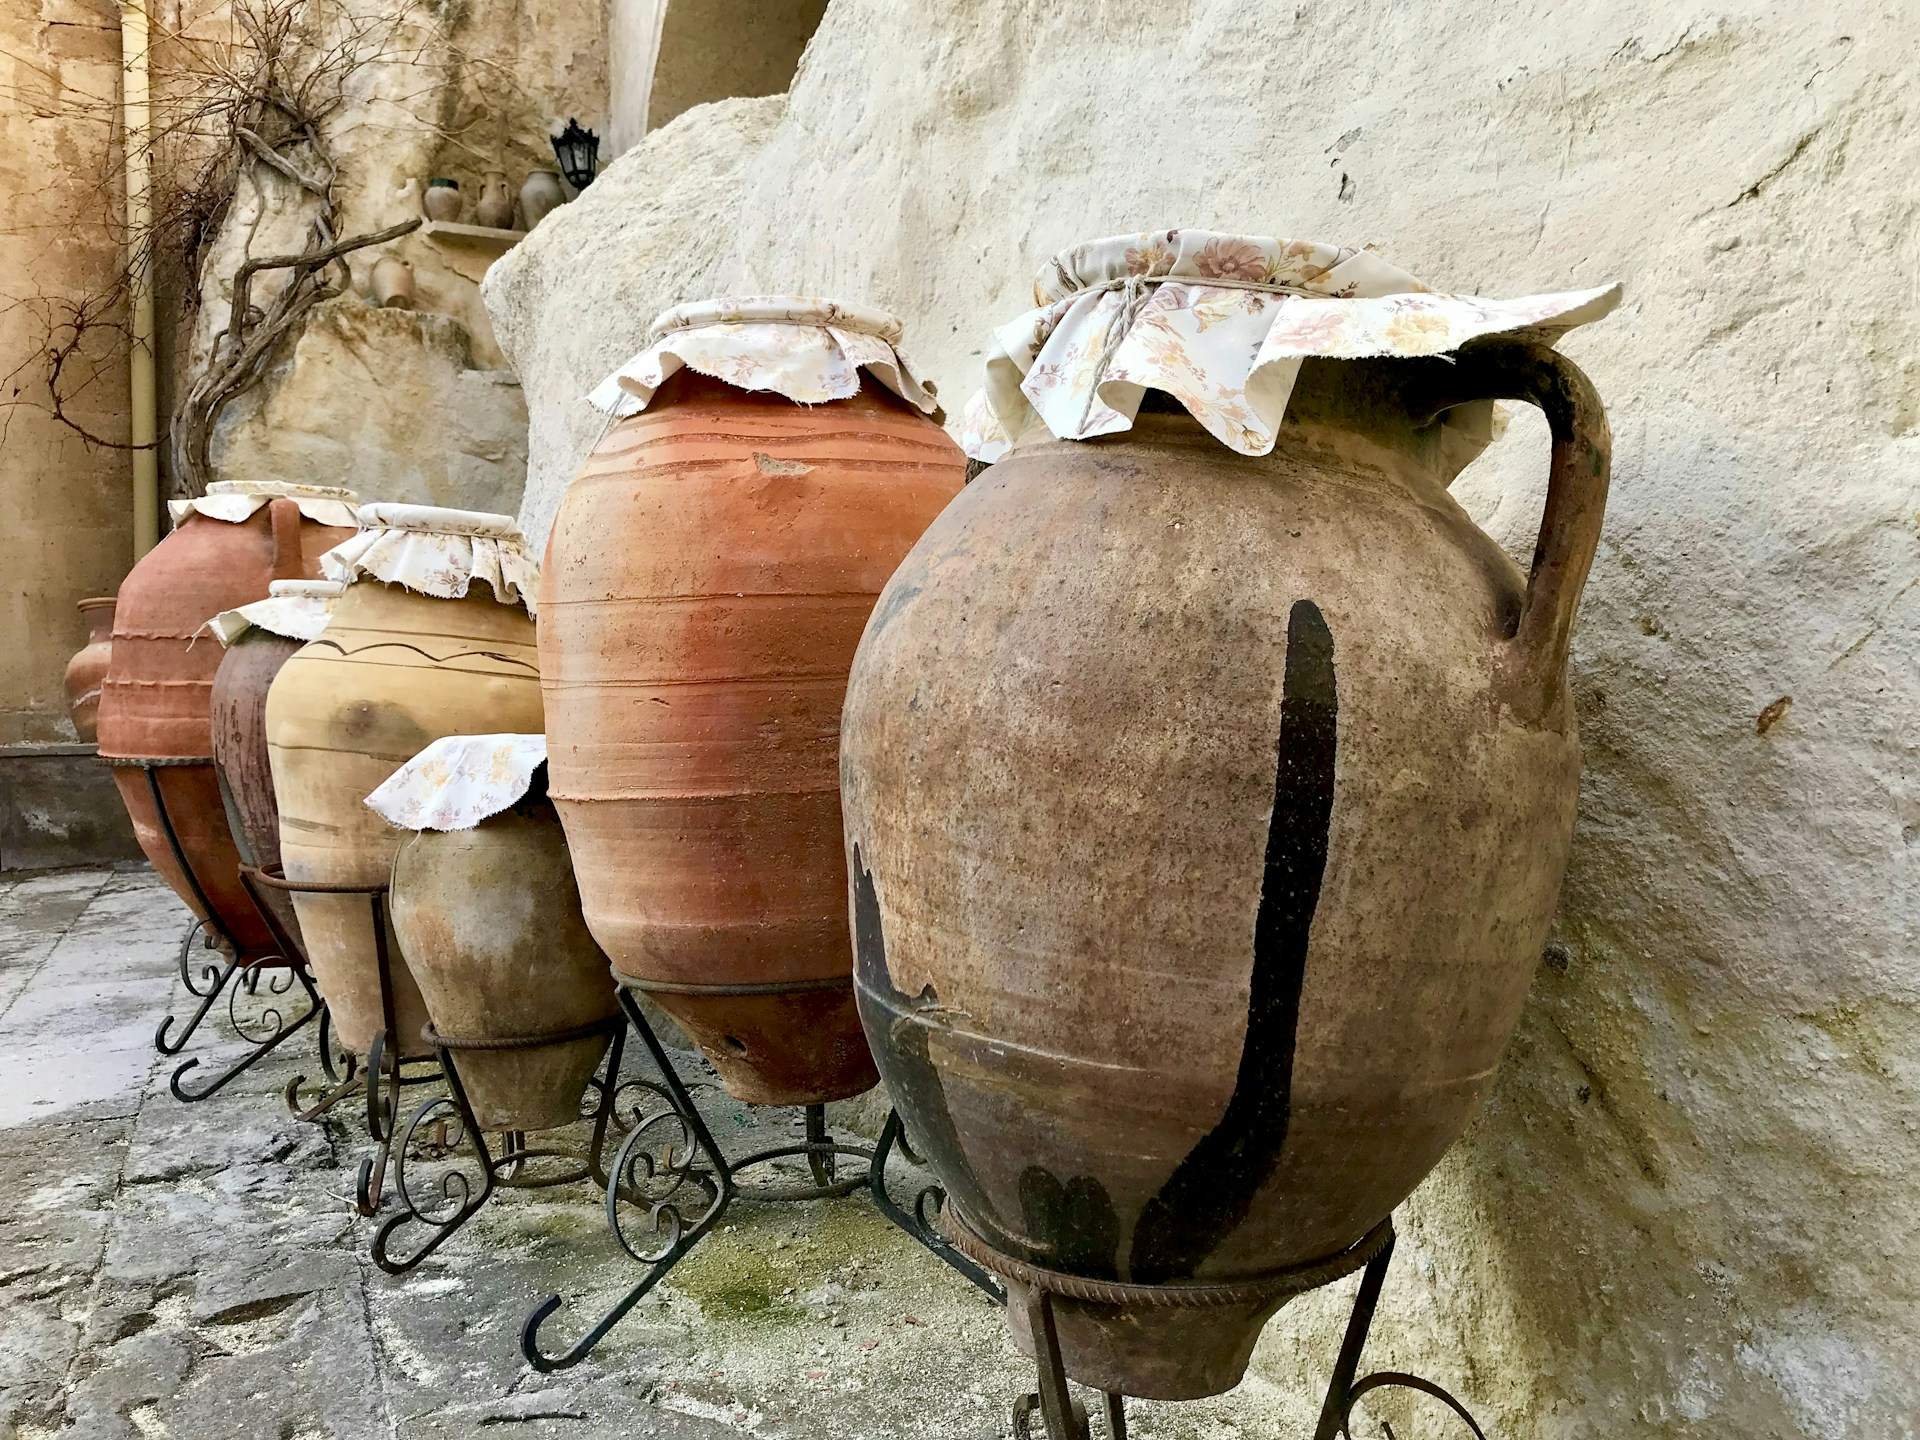 Descubren el vino más antiguo del mundo, con más de dos mil años de 'maduración'